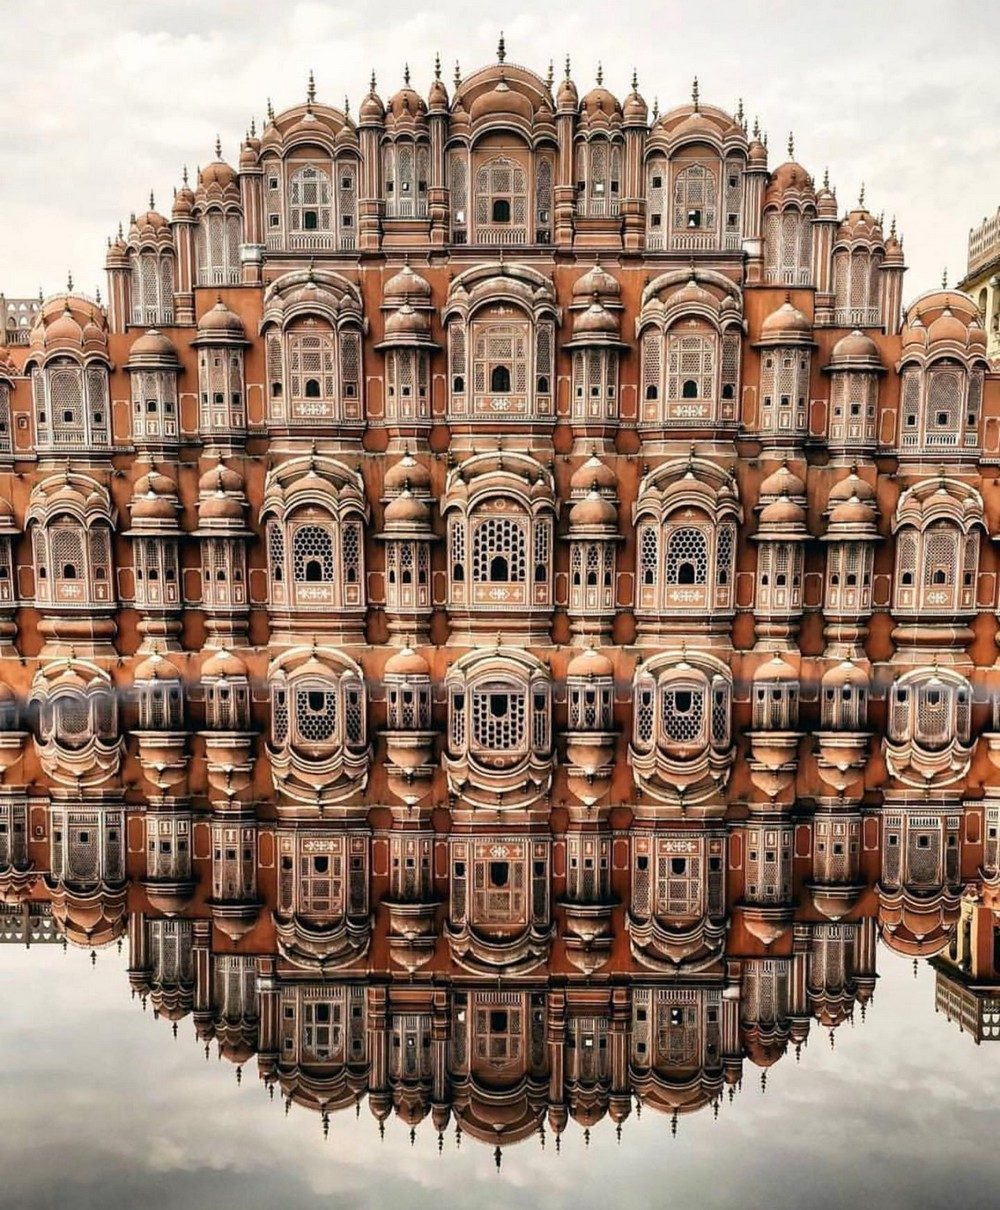 Perfect reflection, Hawa Mahal